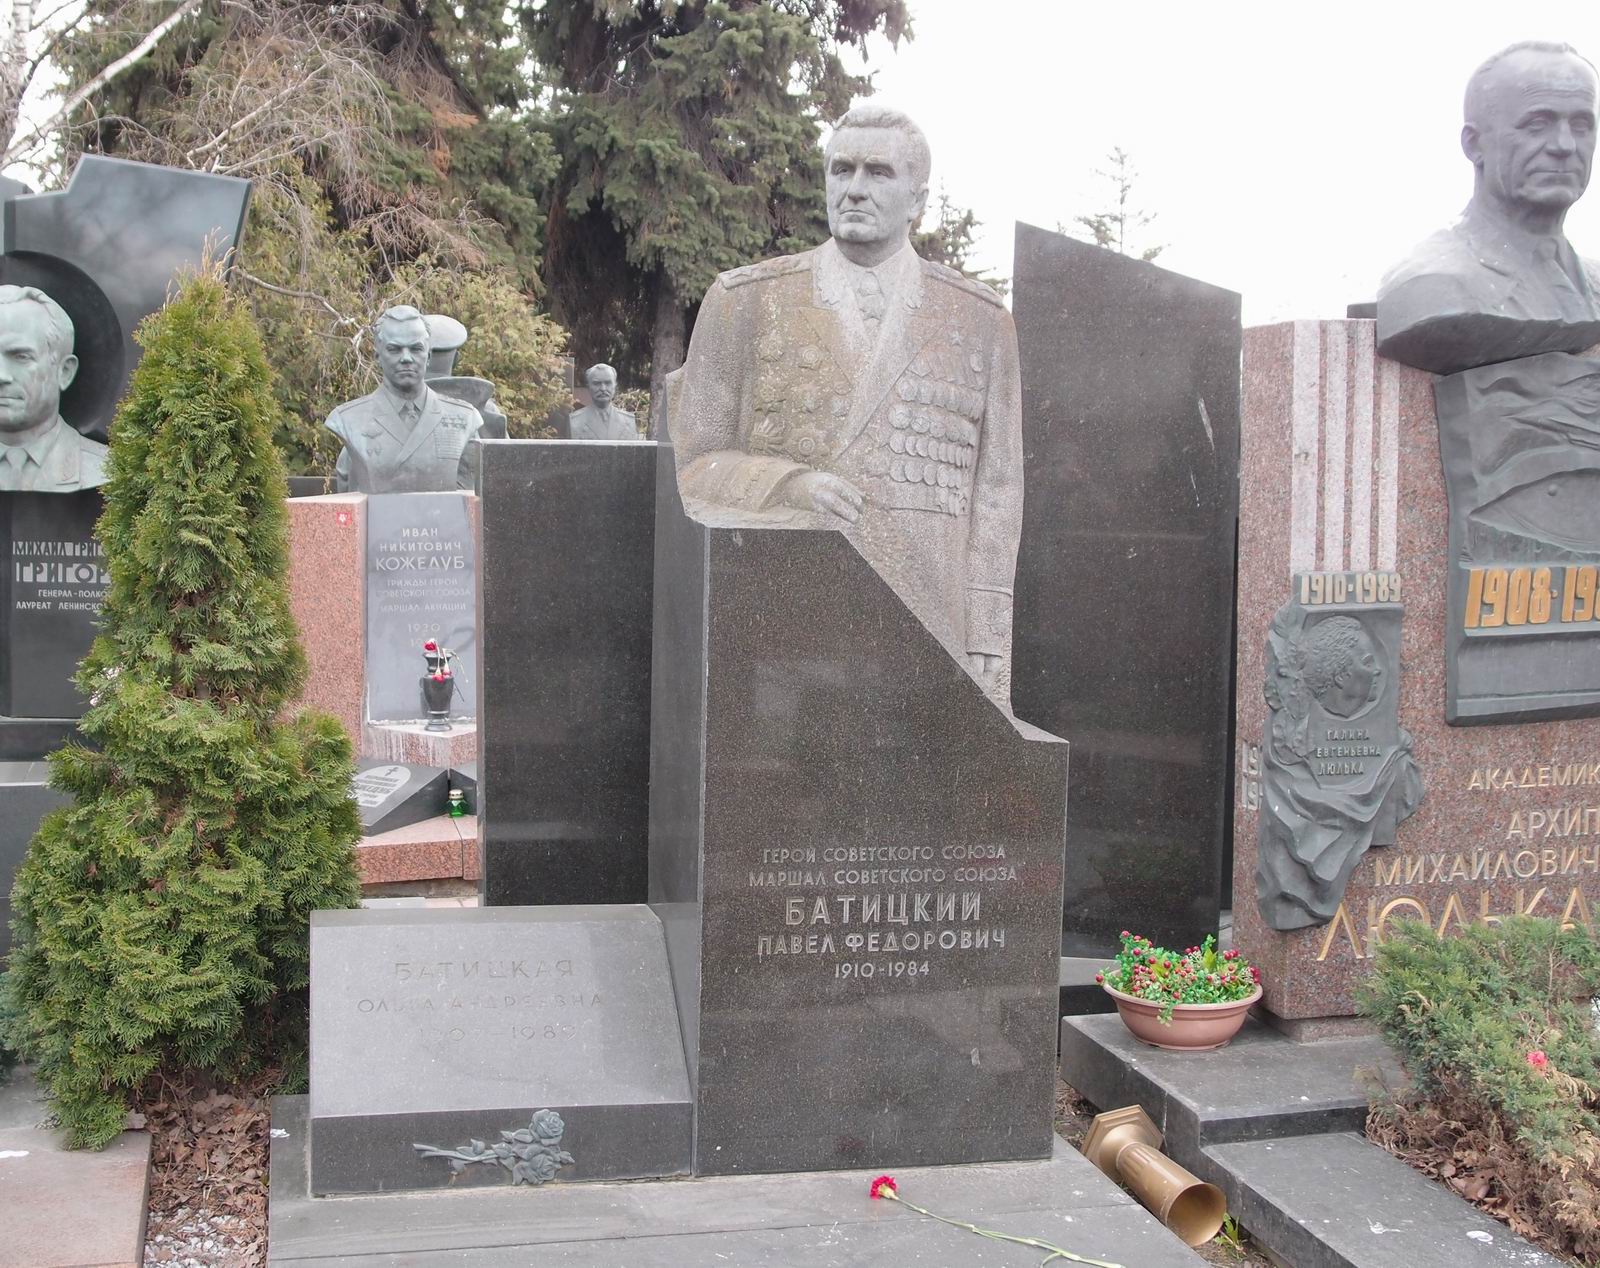 Памятник на могиле Батицкого П.Ф. (1910-1984), ск. А.Елецкий, арх. Е.Ефремов, на Новодевичьем кладбище (7-20-11). Нажмите левую кнопку мыши чтобы увидеть фрагмент памятника.